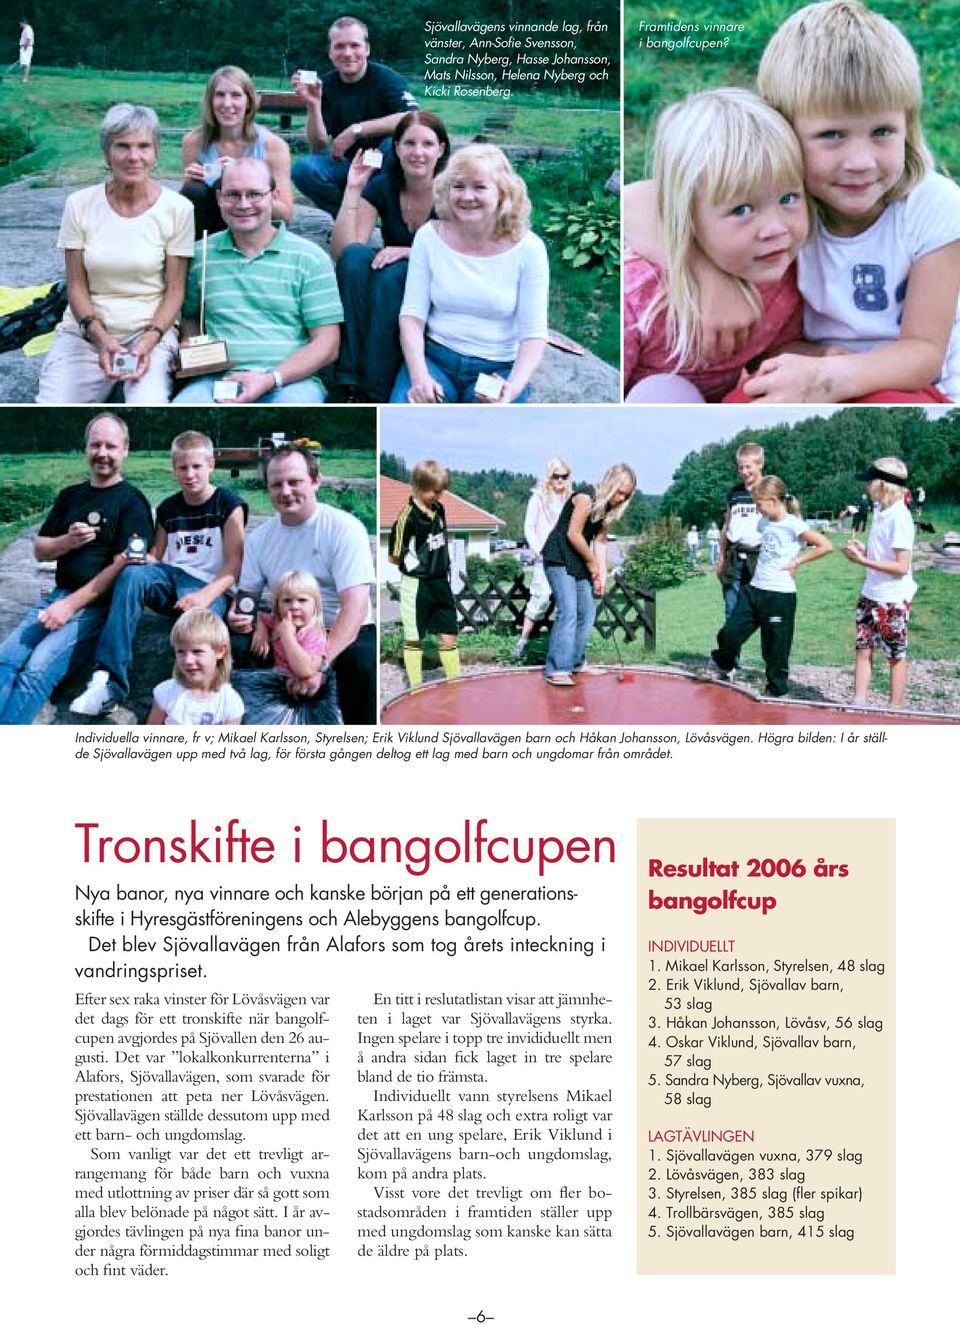 Högra bilden: I år ställde Sjövallavägen upp med två lag, för första gången deltog ett lag med barn och ungdomar från området.